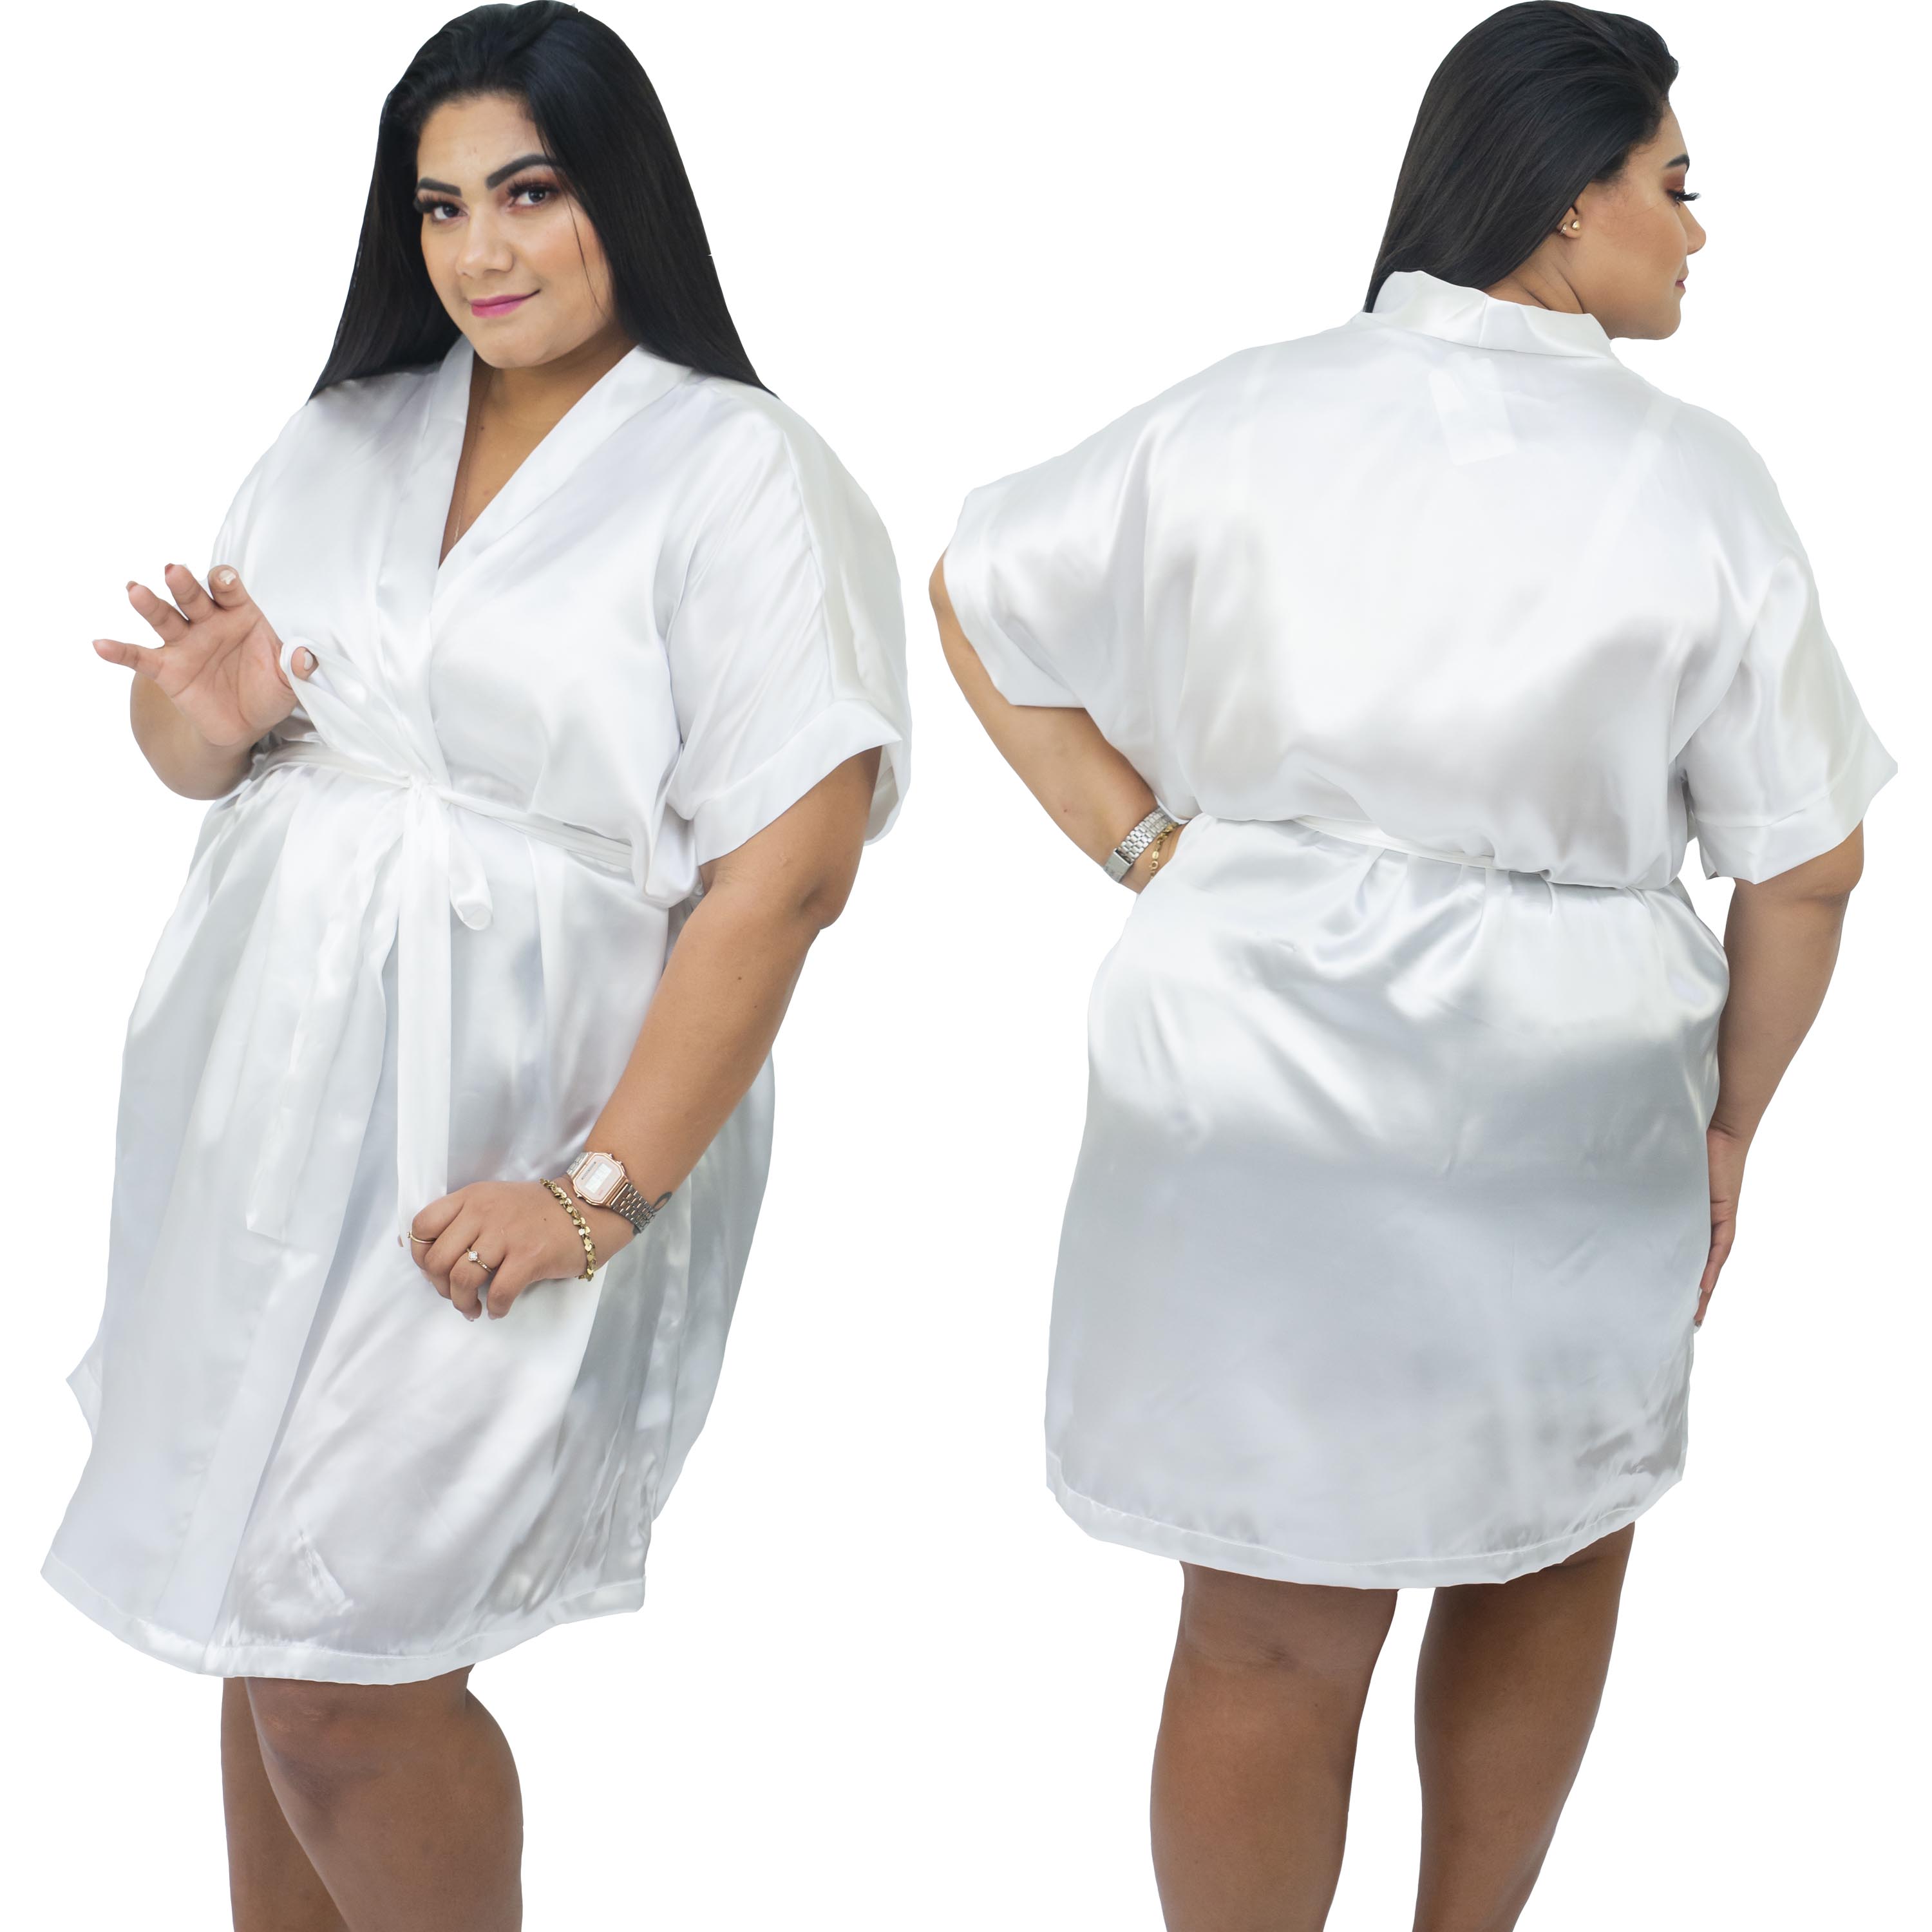 Robe de Cetim Com Elastano Feminino Plus Size 48 50 52 e 54 Branco